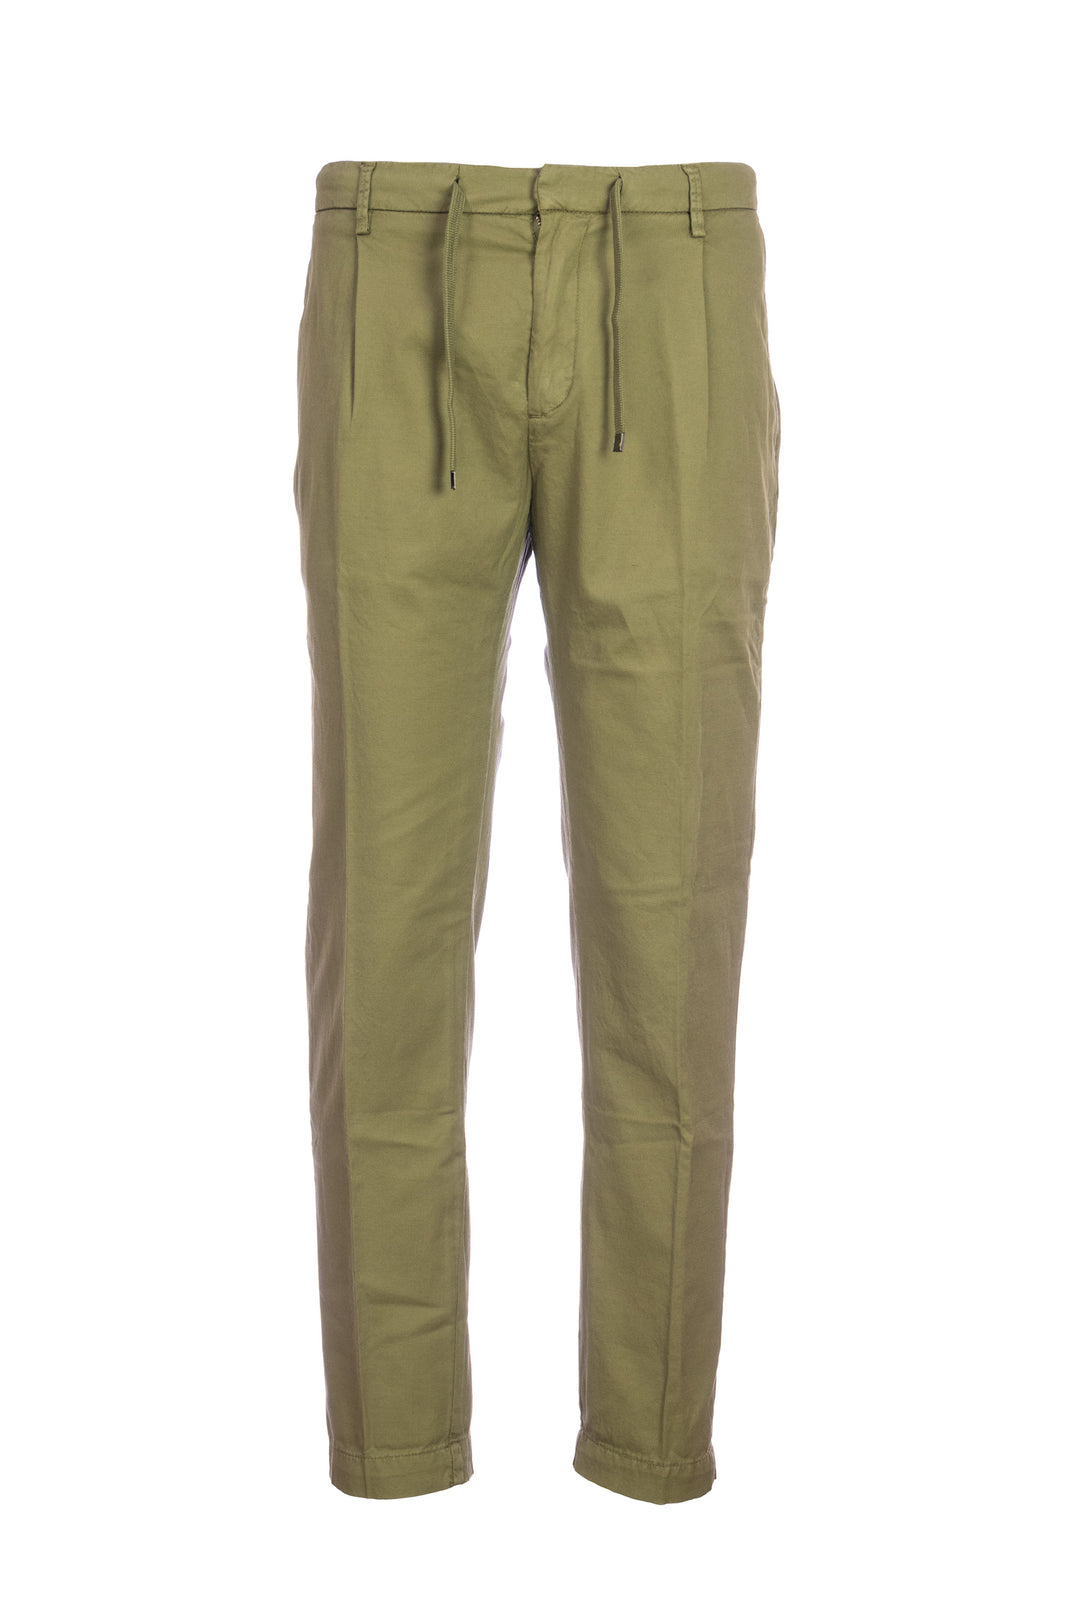 YAN SIMMON Pantalone verde oliva in misto lino e cotone elasticizzato - Mancinelli 1954